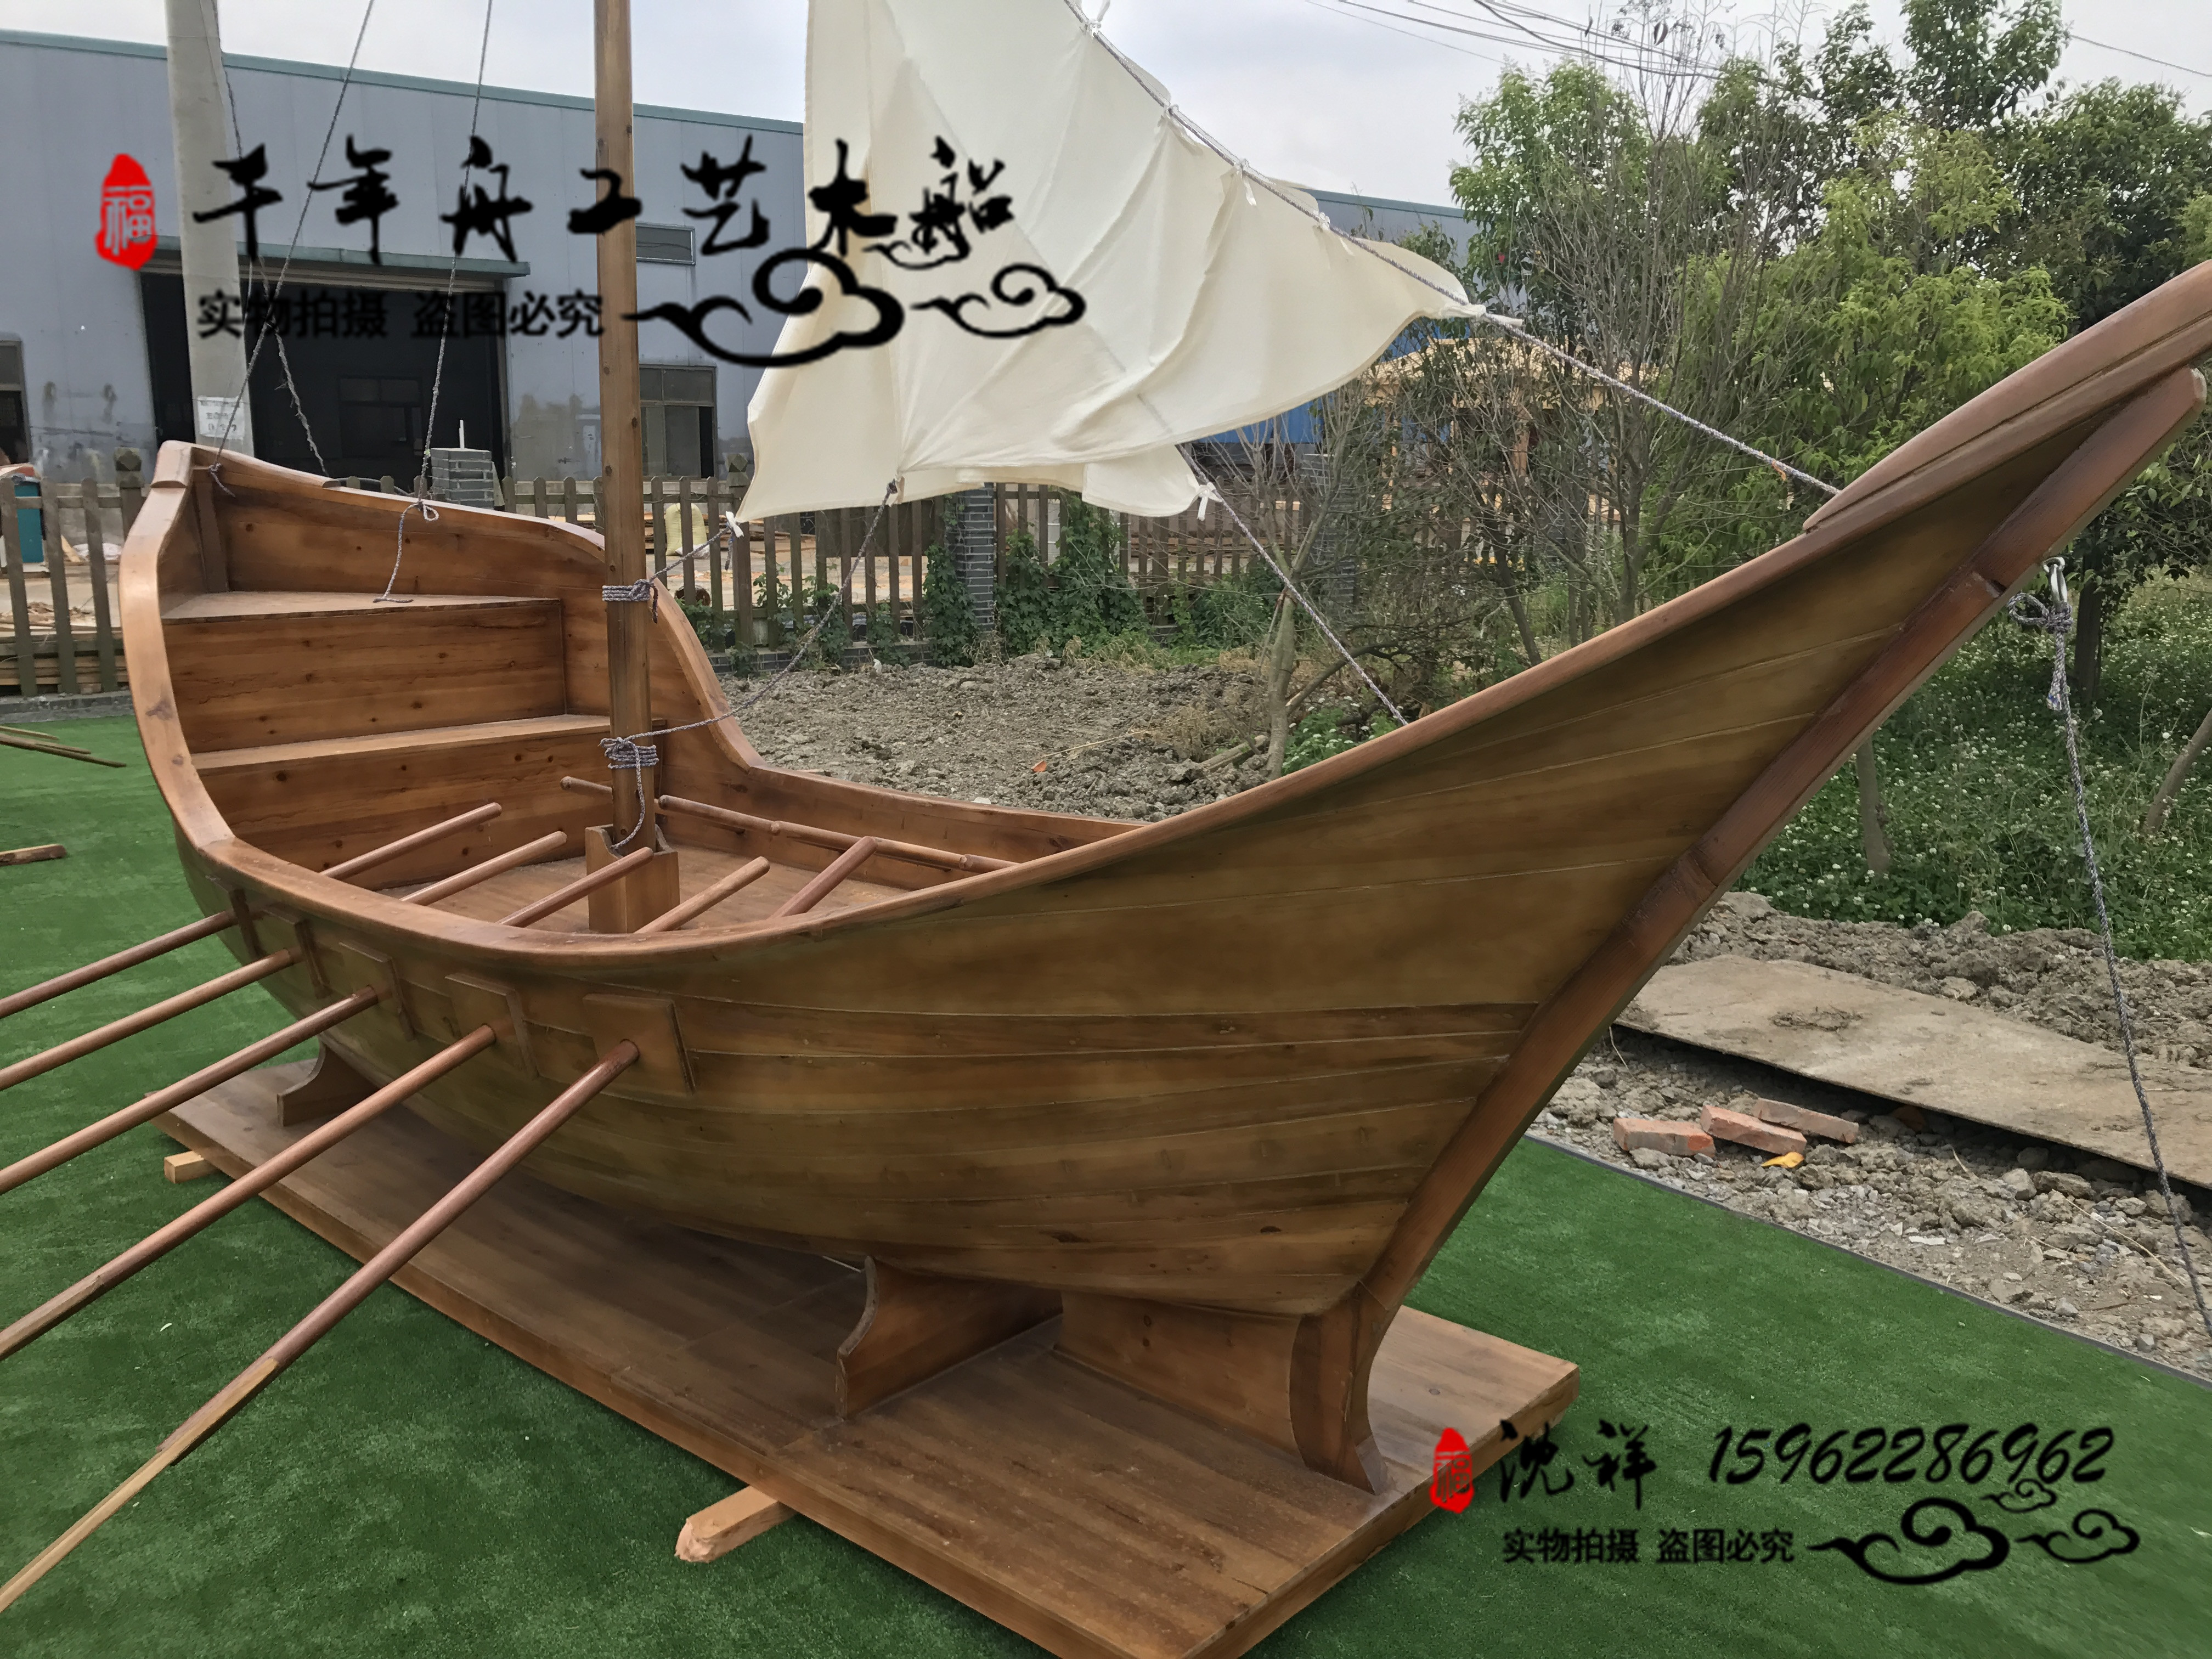 海盗船欧式木船景观木船厂家直销酒店餐饮木船景观装饰船